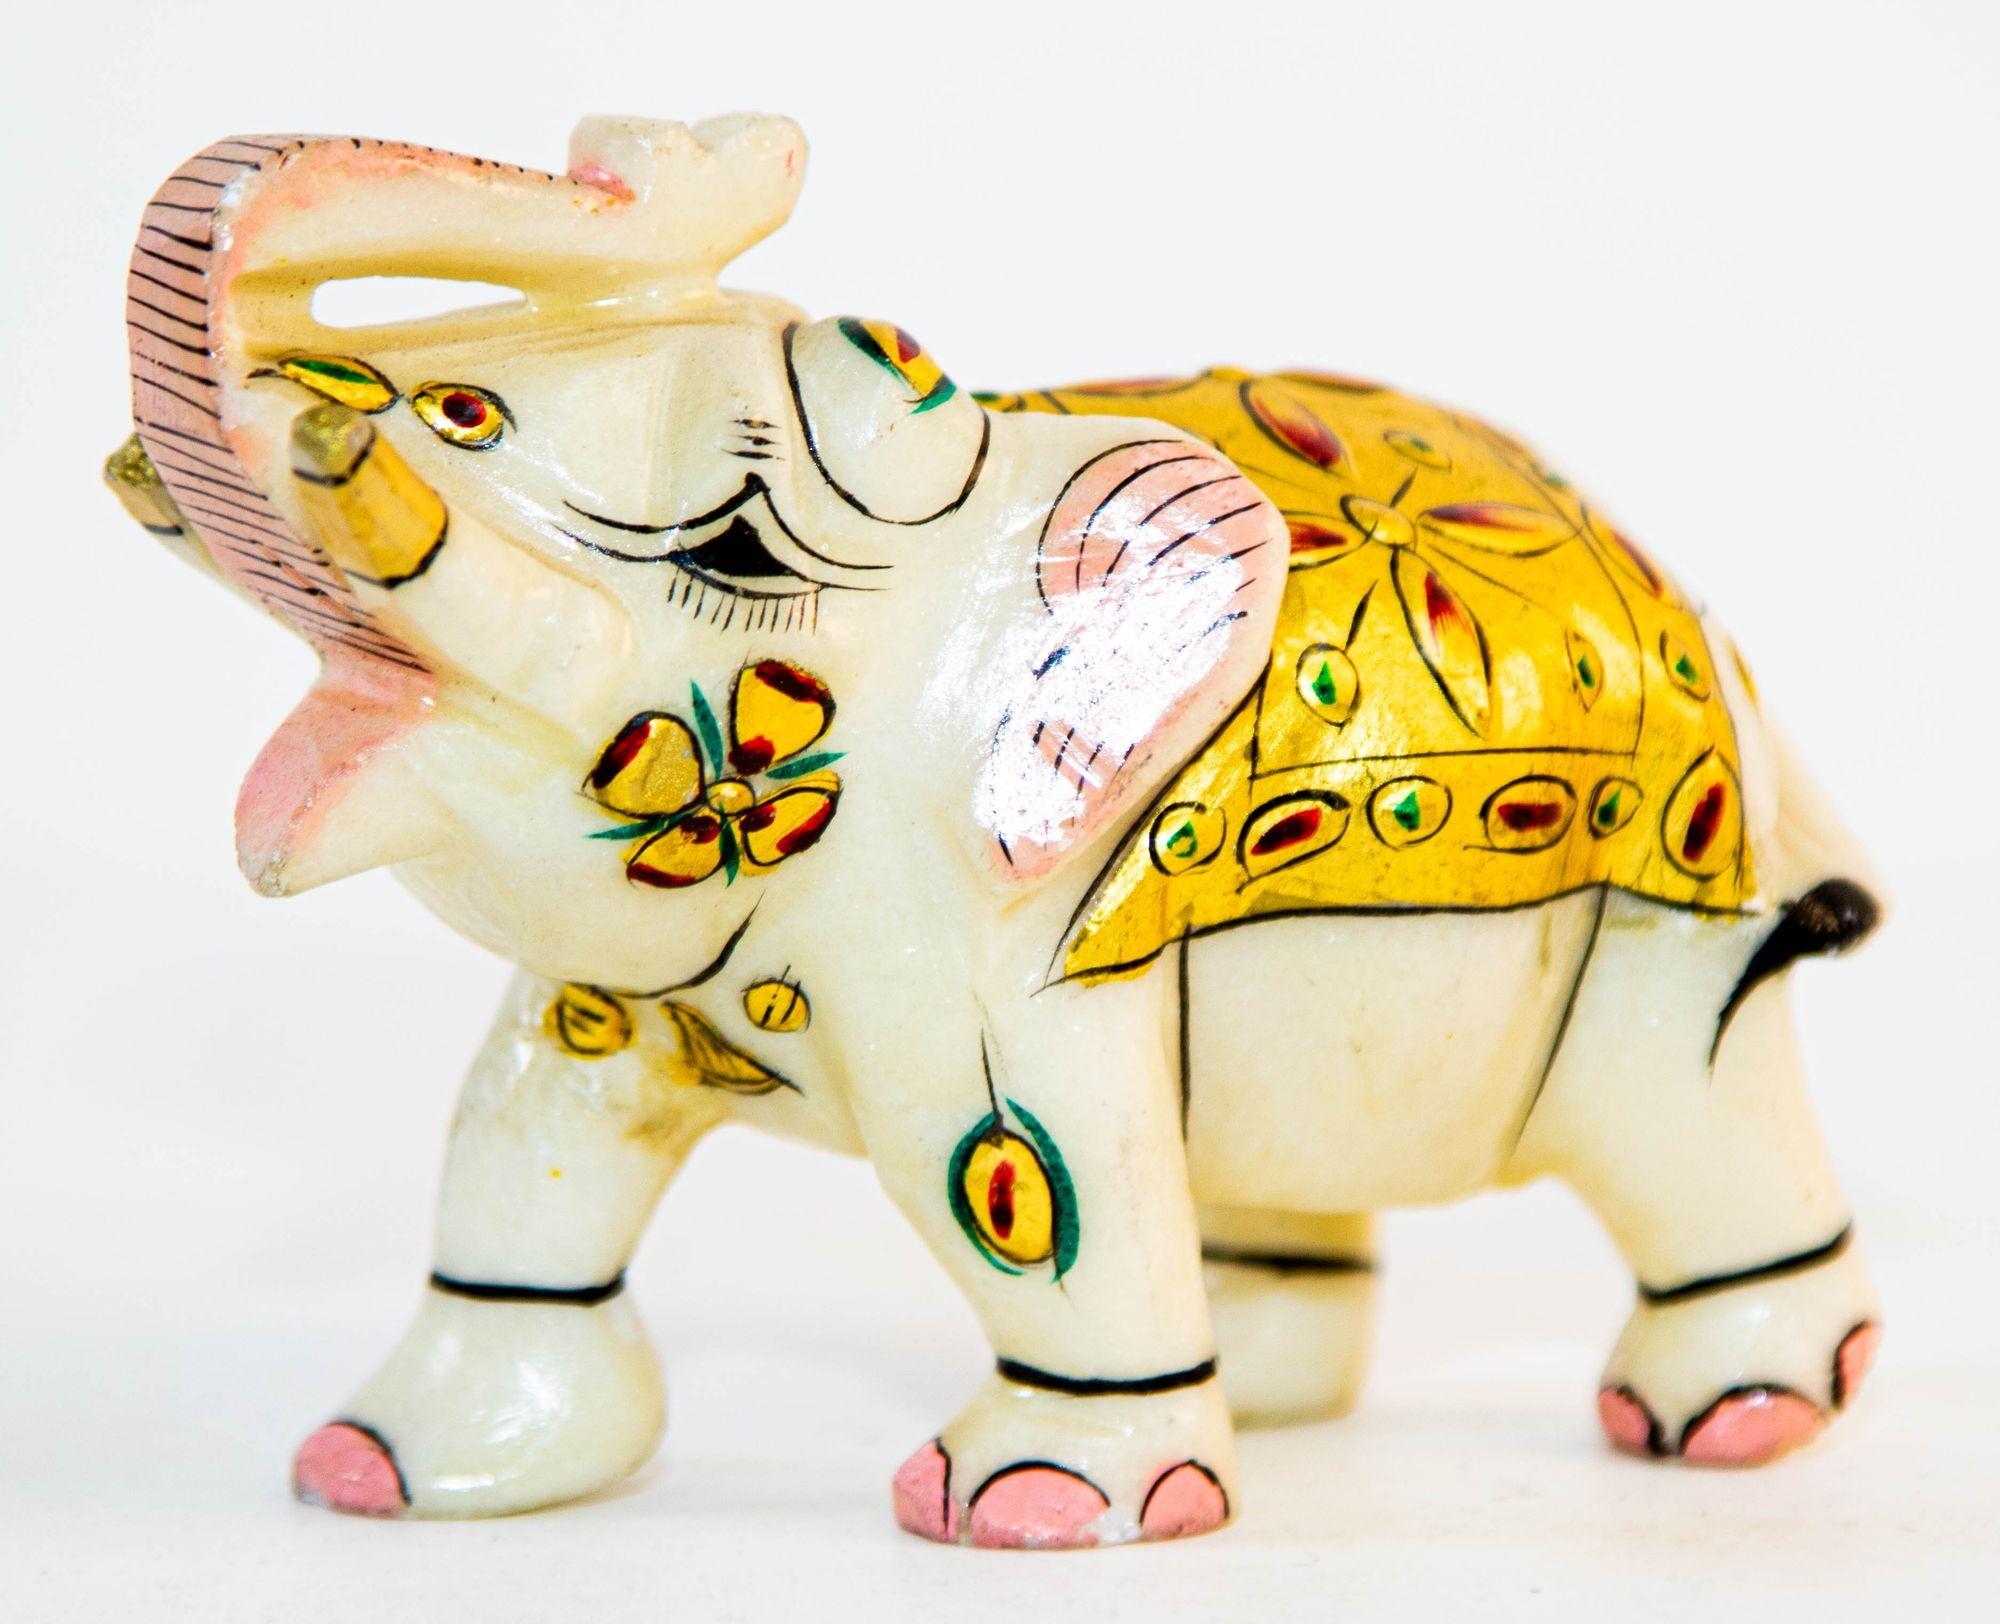 Vintage White Marble Mughal Jeweled Elephant Sculpture Paper Weight.
Fein handbemalte Tierskulptur eines Elefanten mit bunter Gold-, Rosa- und Rotfärbung.
Sammelbare zeremonielle, handgeschnitzte Steinskulptur aus weißem Marmor, Elefant mit